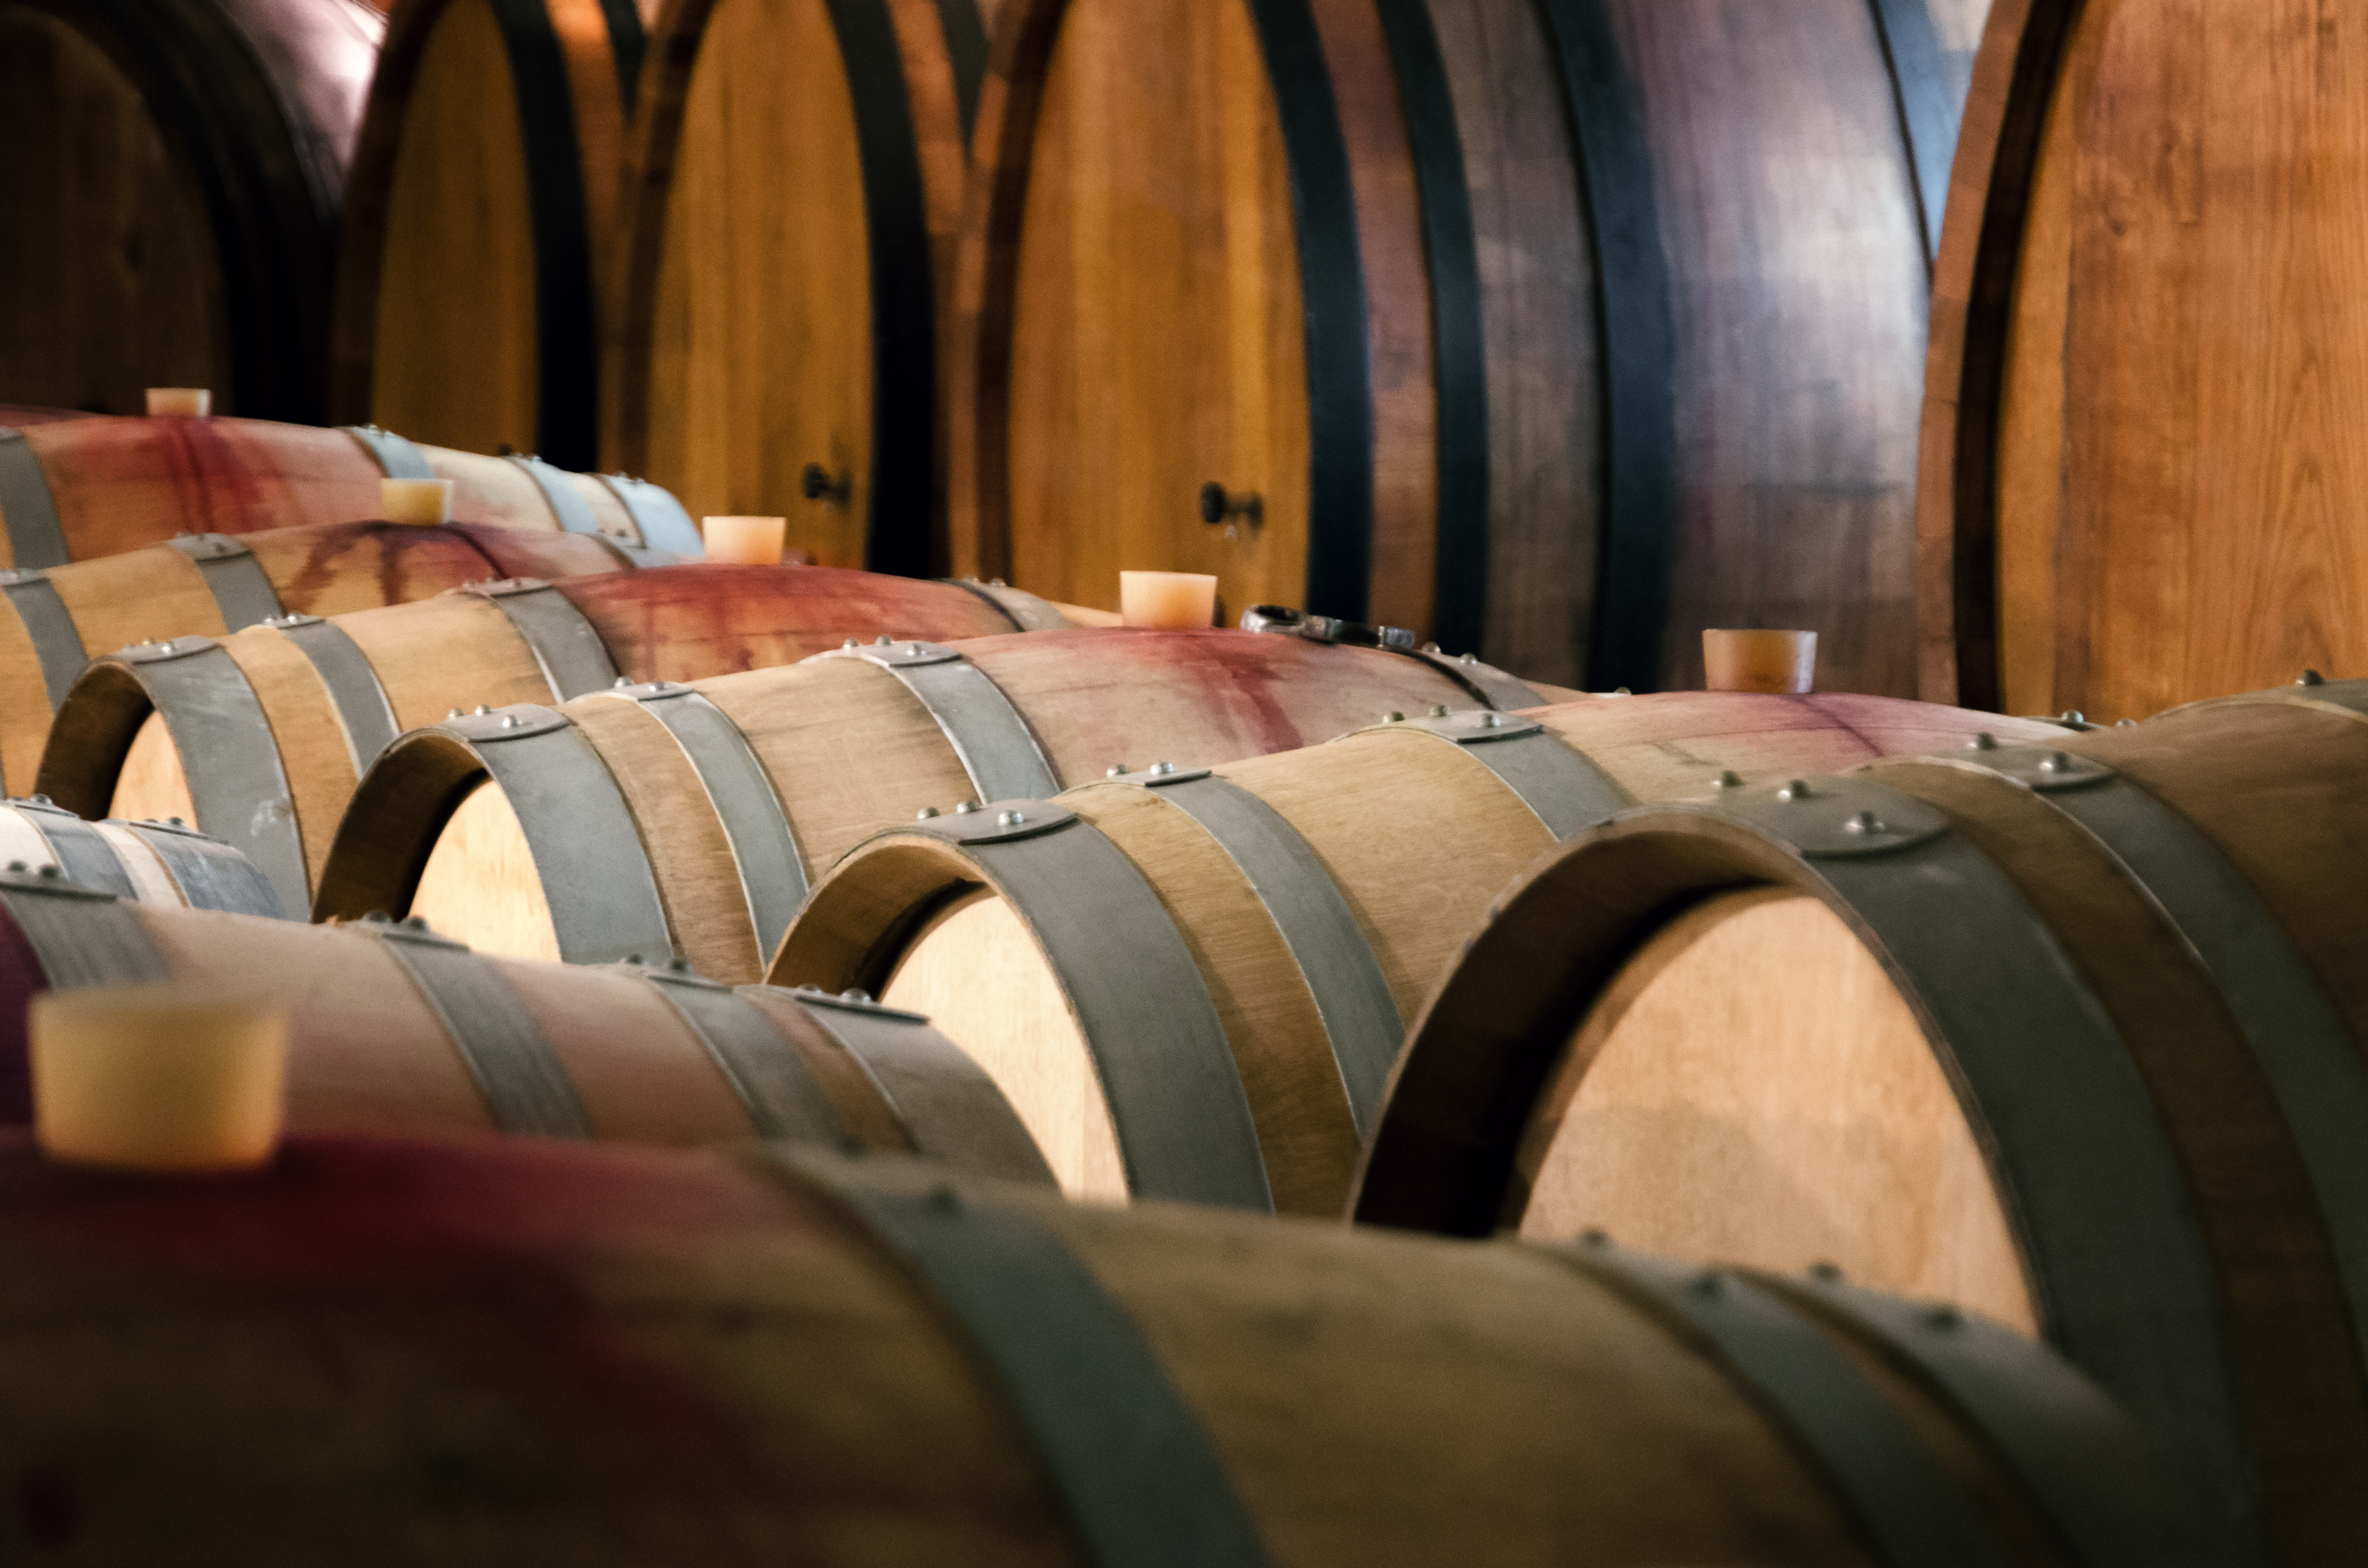 Noi di Polsinelli siamo esperti nell’imbottigliamento. Per questo, ecco a voi tutte le date e consigli per l’imbottigliamento del vino 2022.